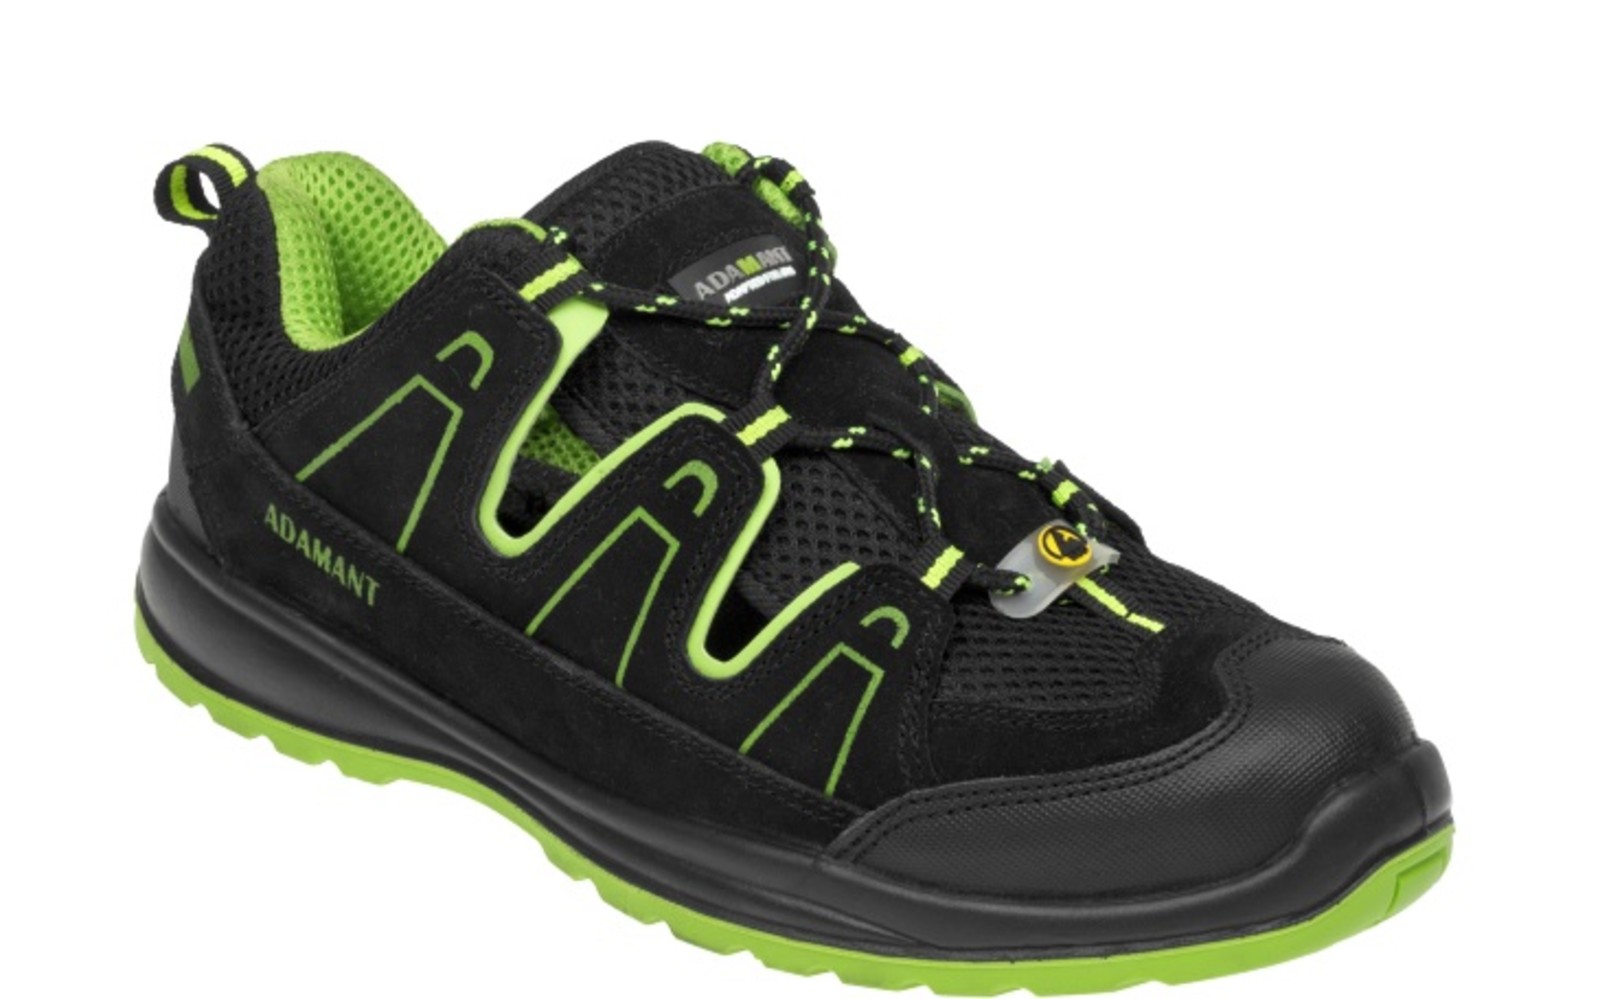 Bezpečnostné sandále Adamant Alegro S1 ESD - veľkosť: 47, farba: čierna/zelená